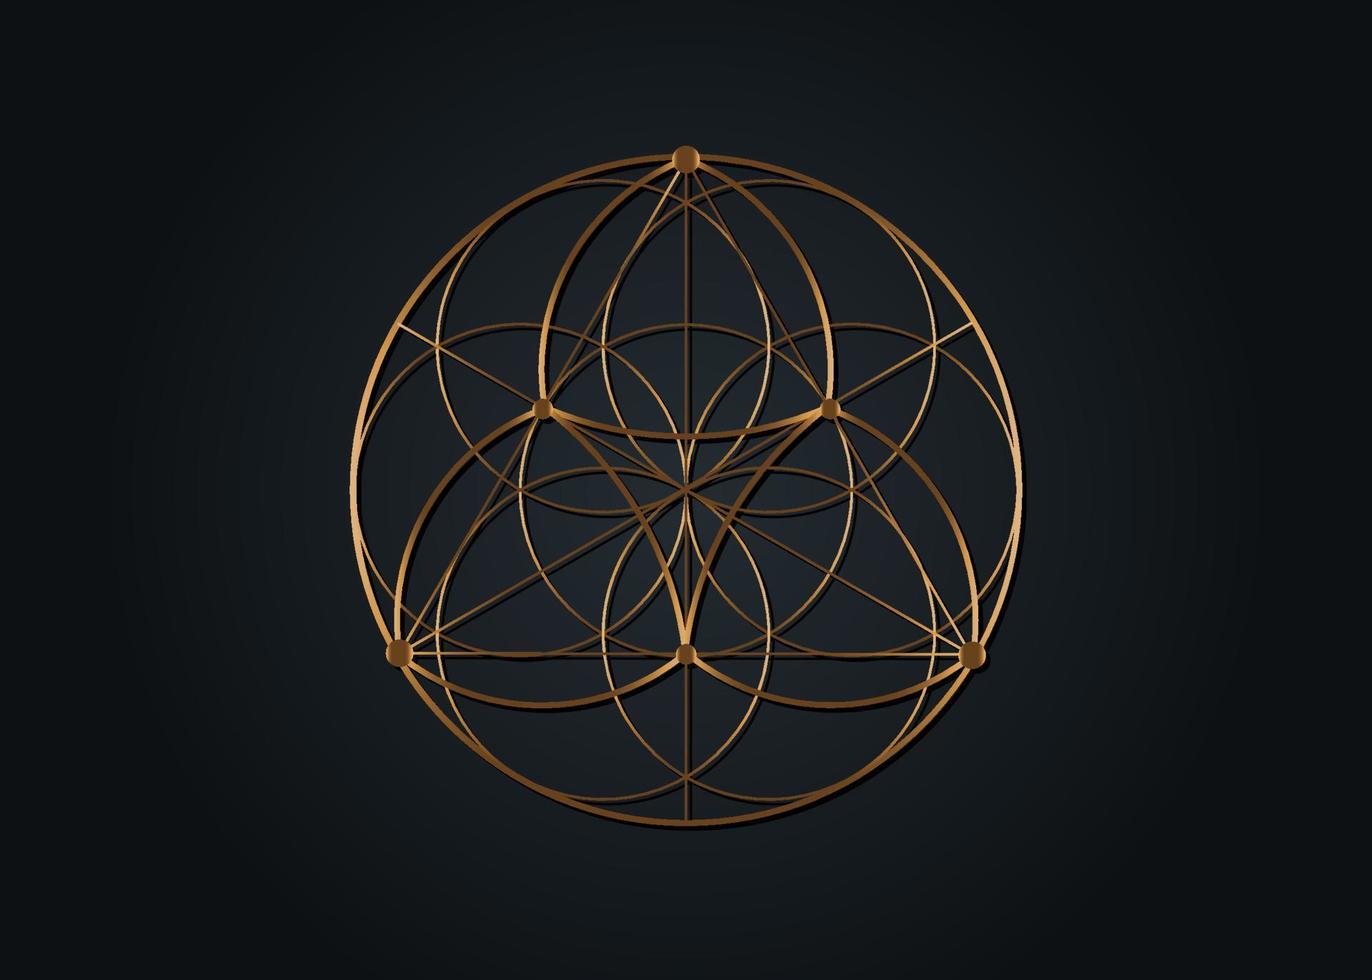 semente flor do ícone de lótus da vida, geometria sagrada da mandala yantra, símbolo dourado de harmonia e equilíbrio. talismã místico, vetor de linhas de ouro isolado em fundo preto